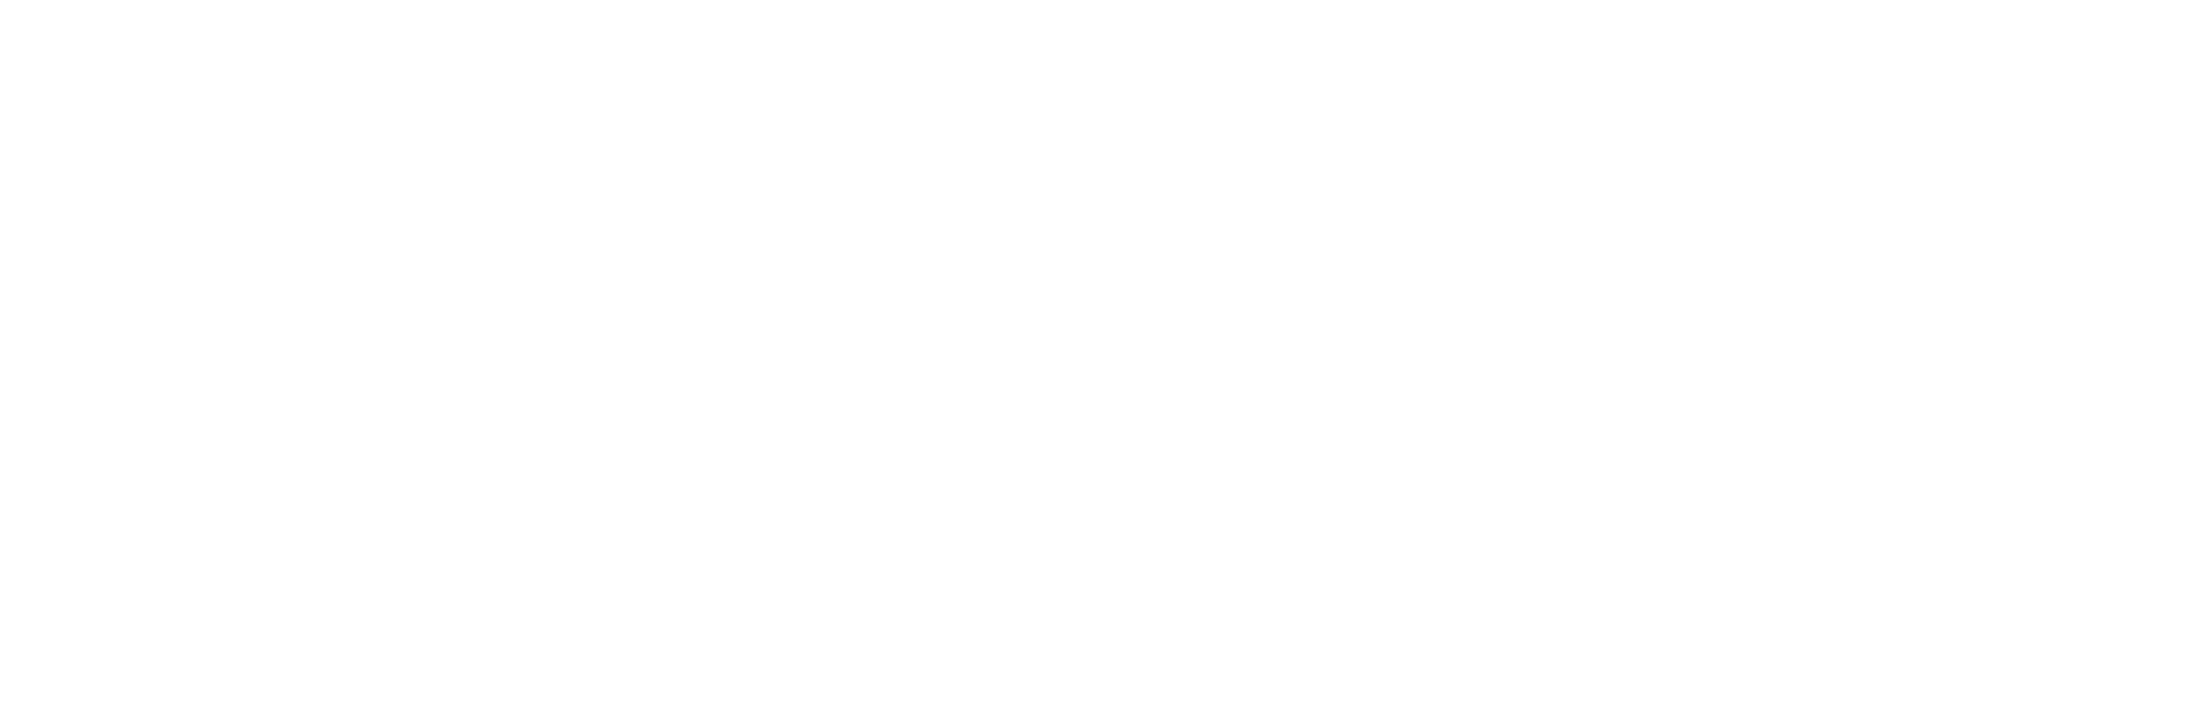 Grow Eat Play logo